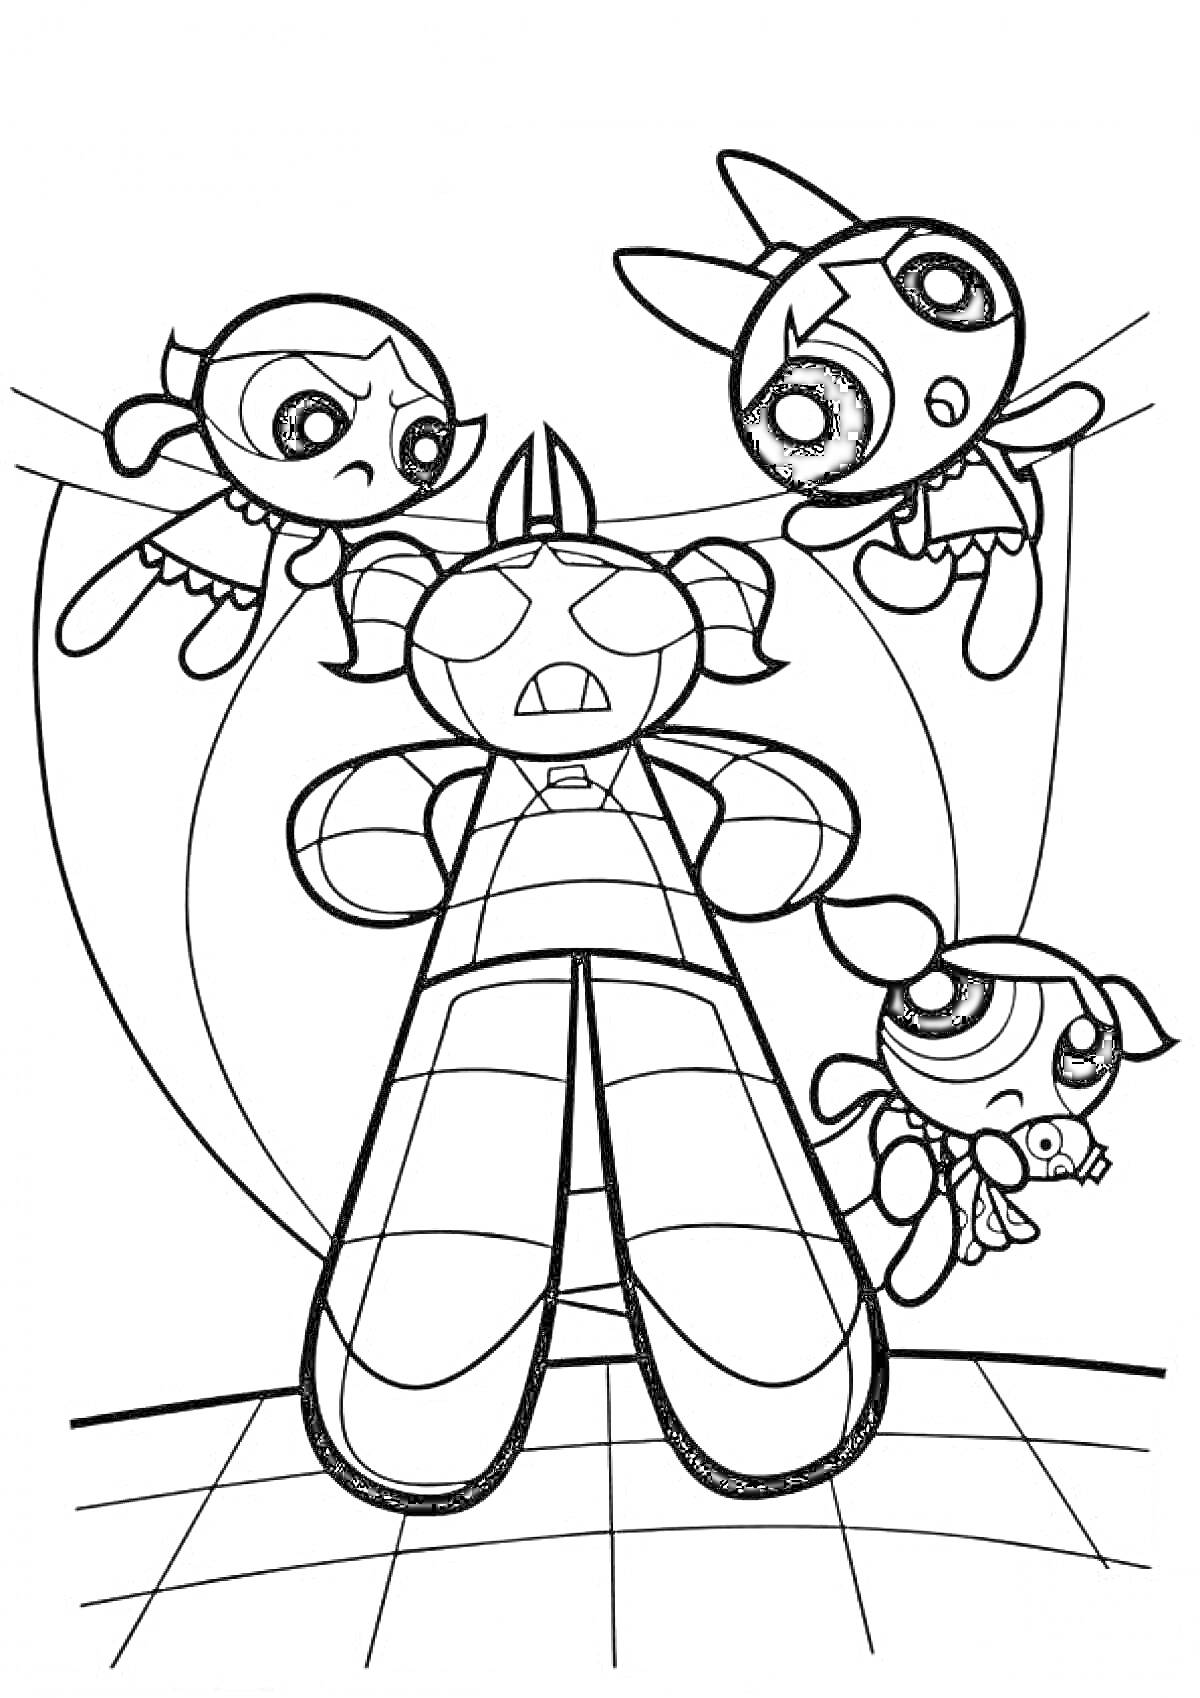 Раскраска Суперкрошки атакуют огромного робота, трое девочек-супергероев в воздухе вокруг робота, робот в центре изображения с круговыми линиями сзади